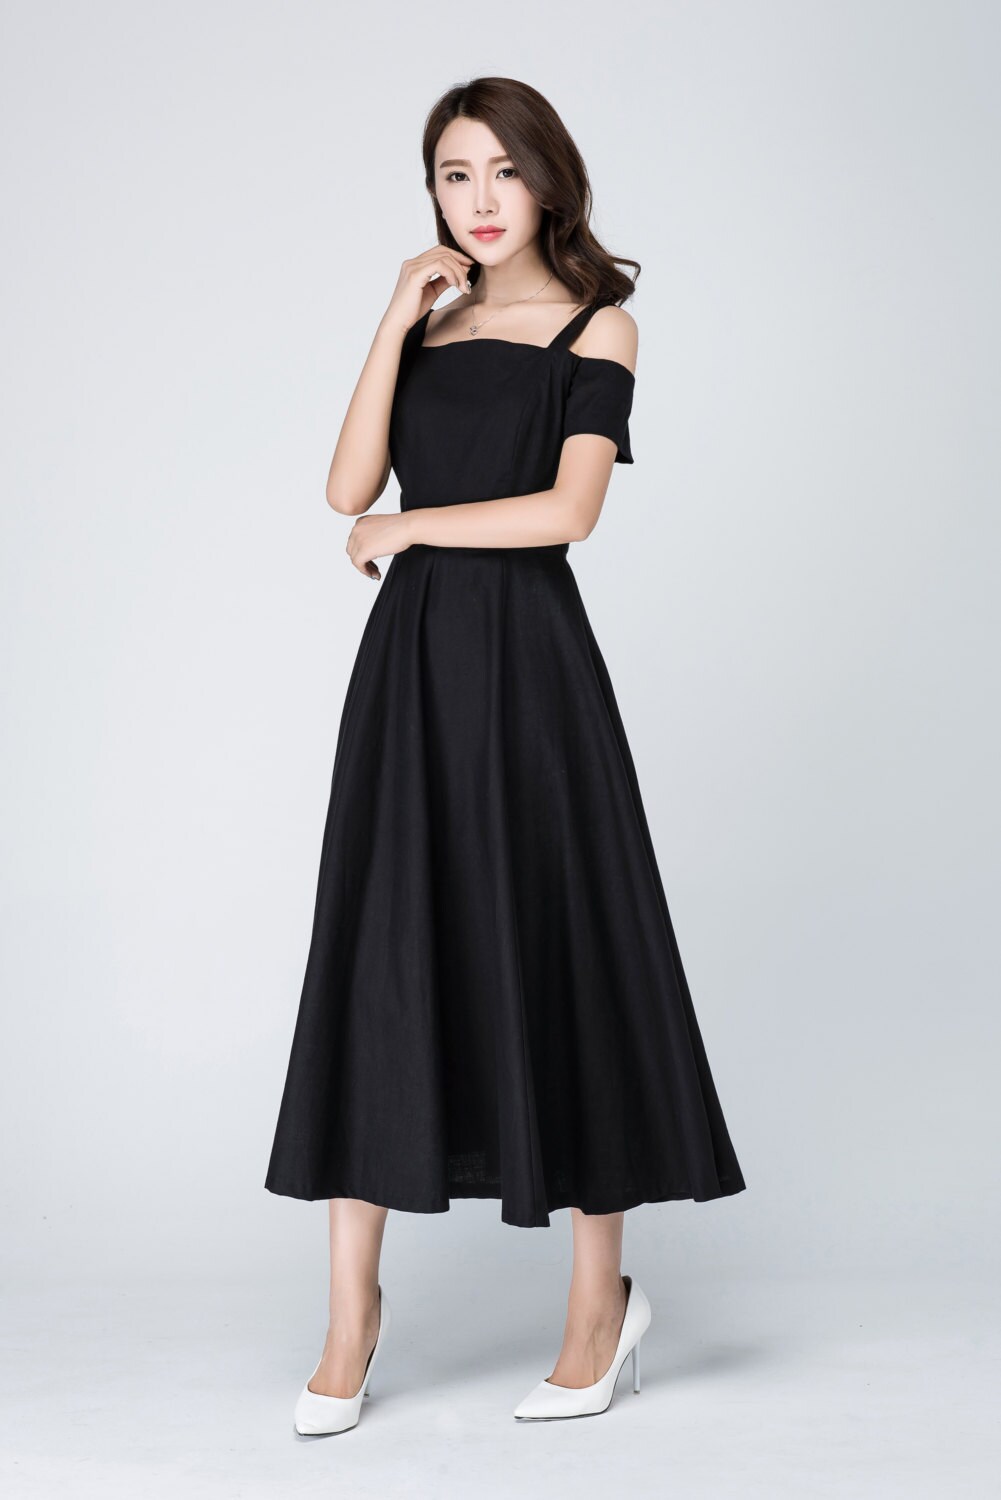 Vintage Off shoulder Maxi dress Black dress 50s dress fit | Etsy